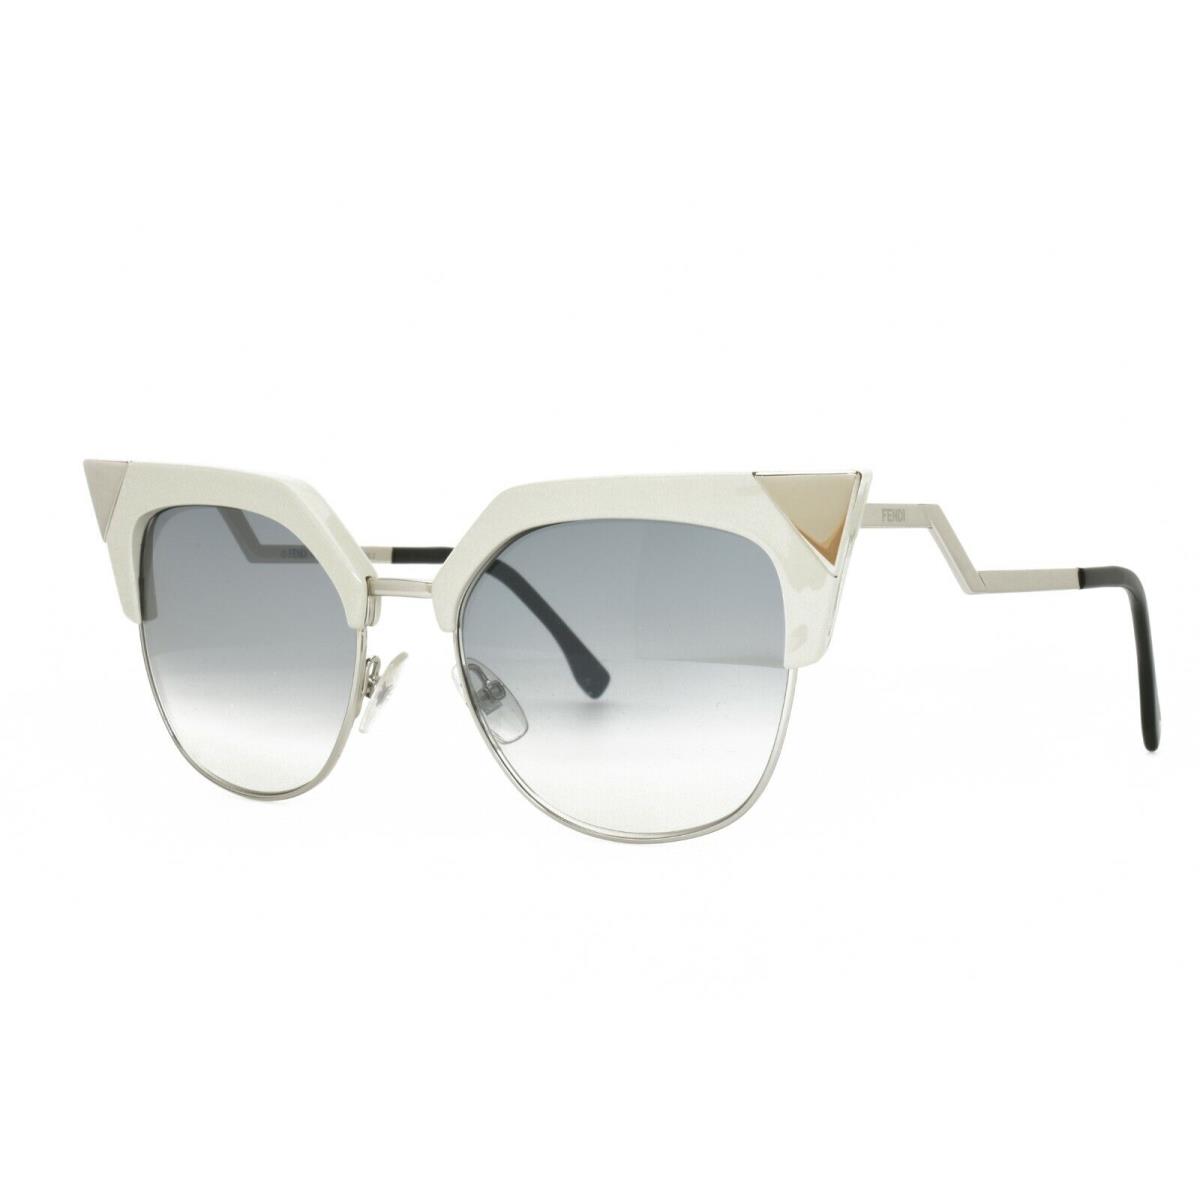 Fendi 0149/S Off White Palladium Sunglasses 54-18-140